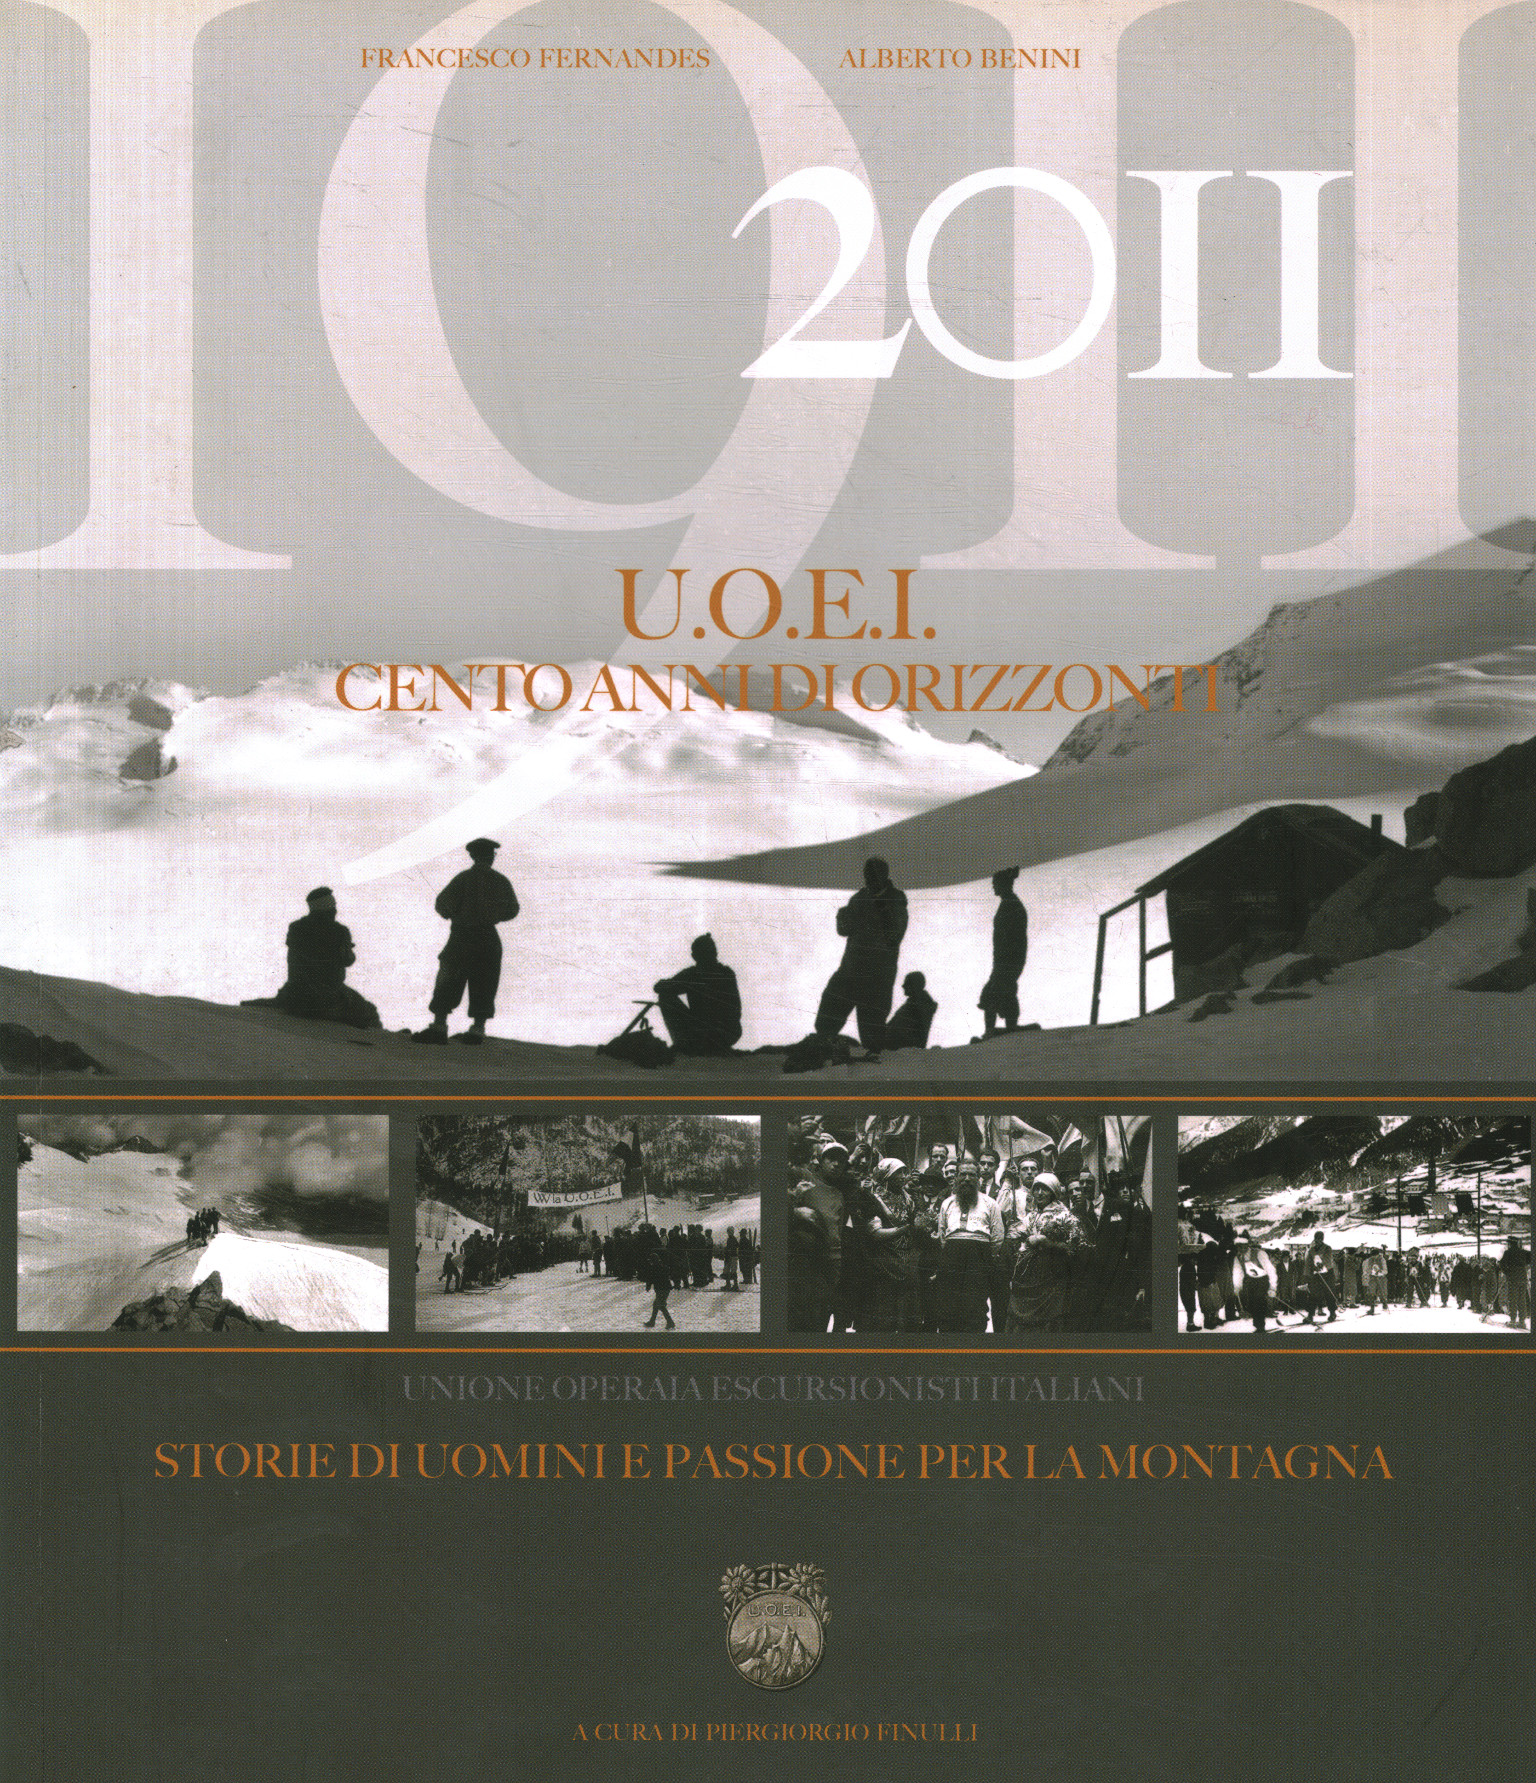 1911-2011 U.O.E.I. Cien años de horizonte